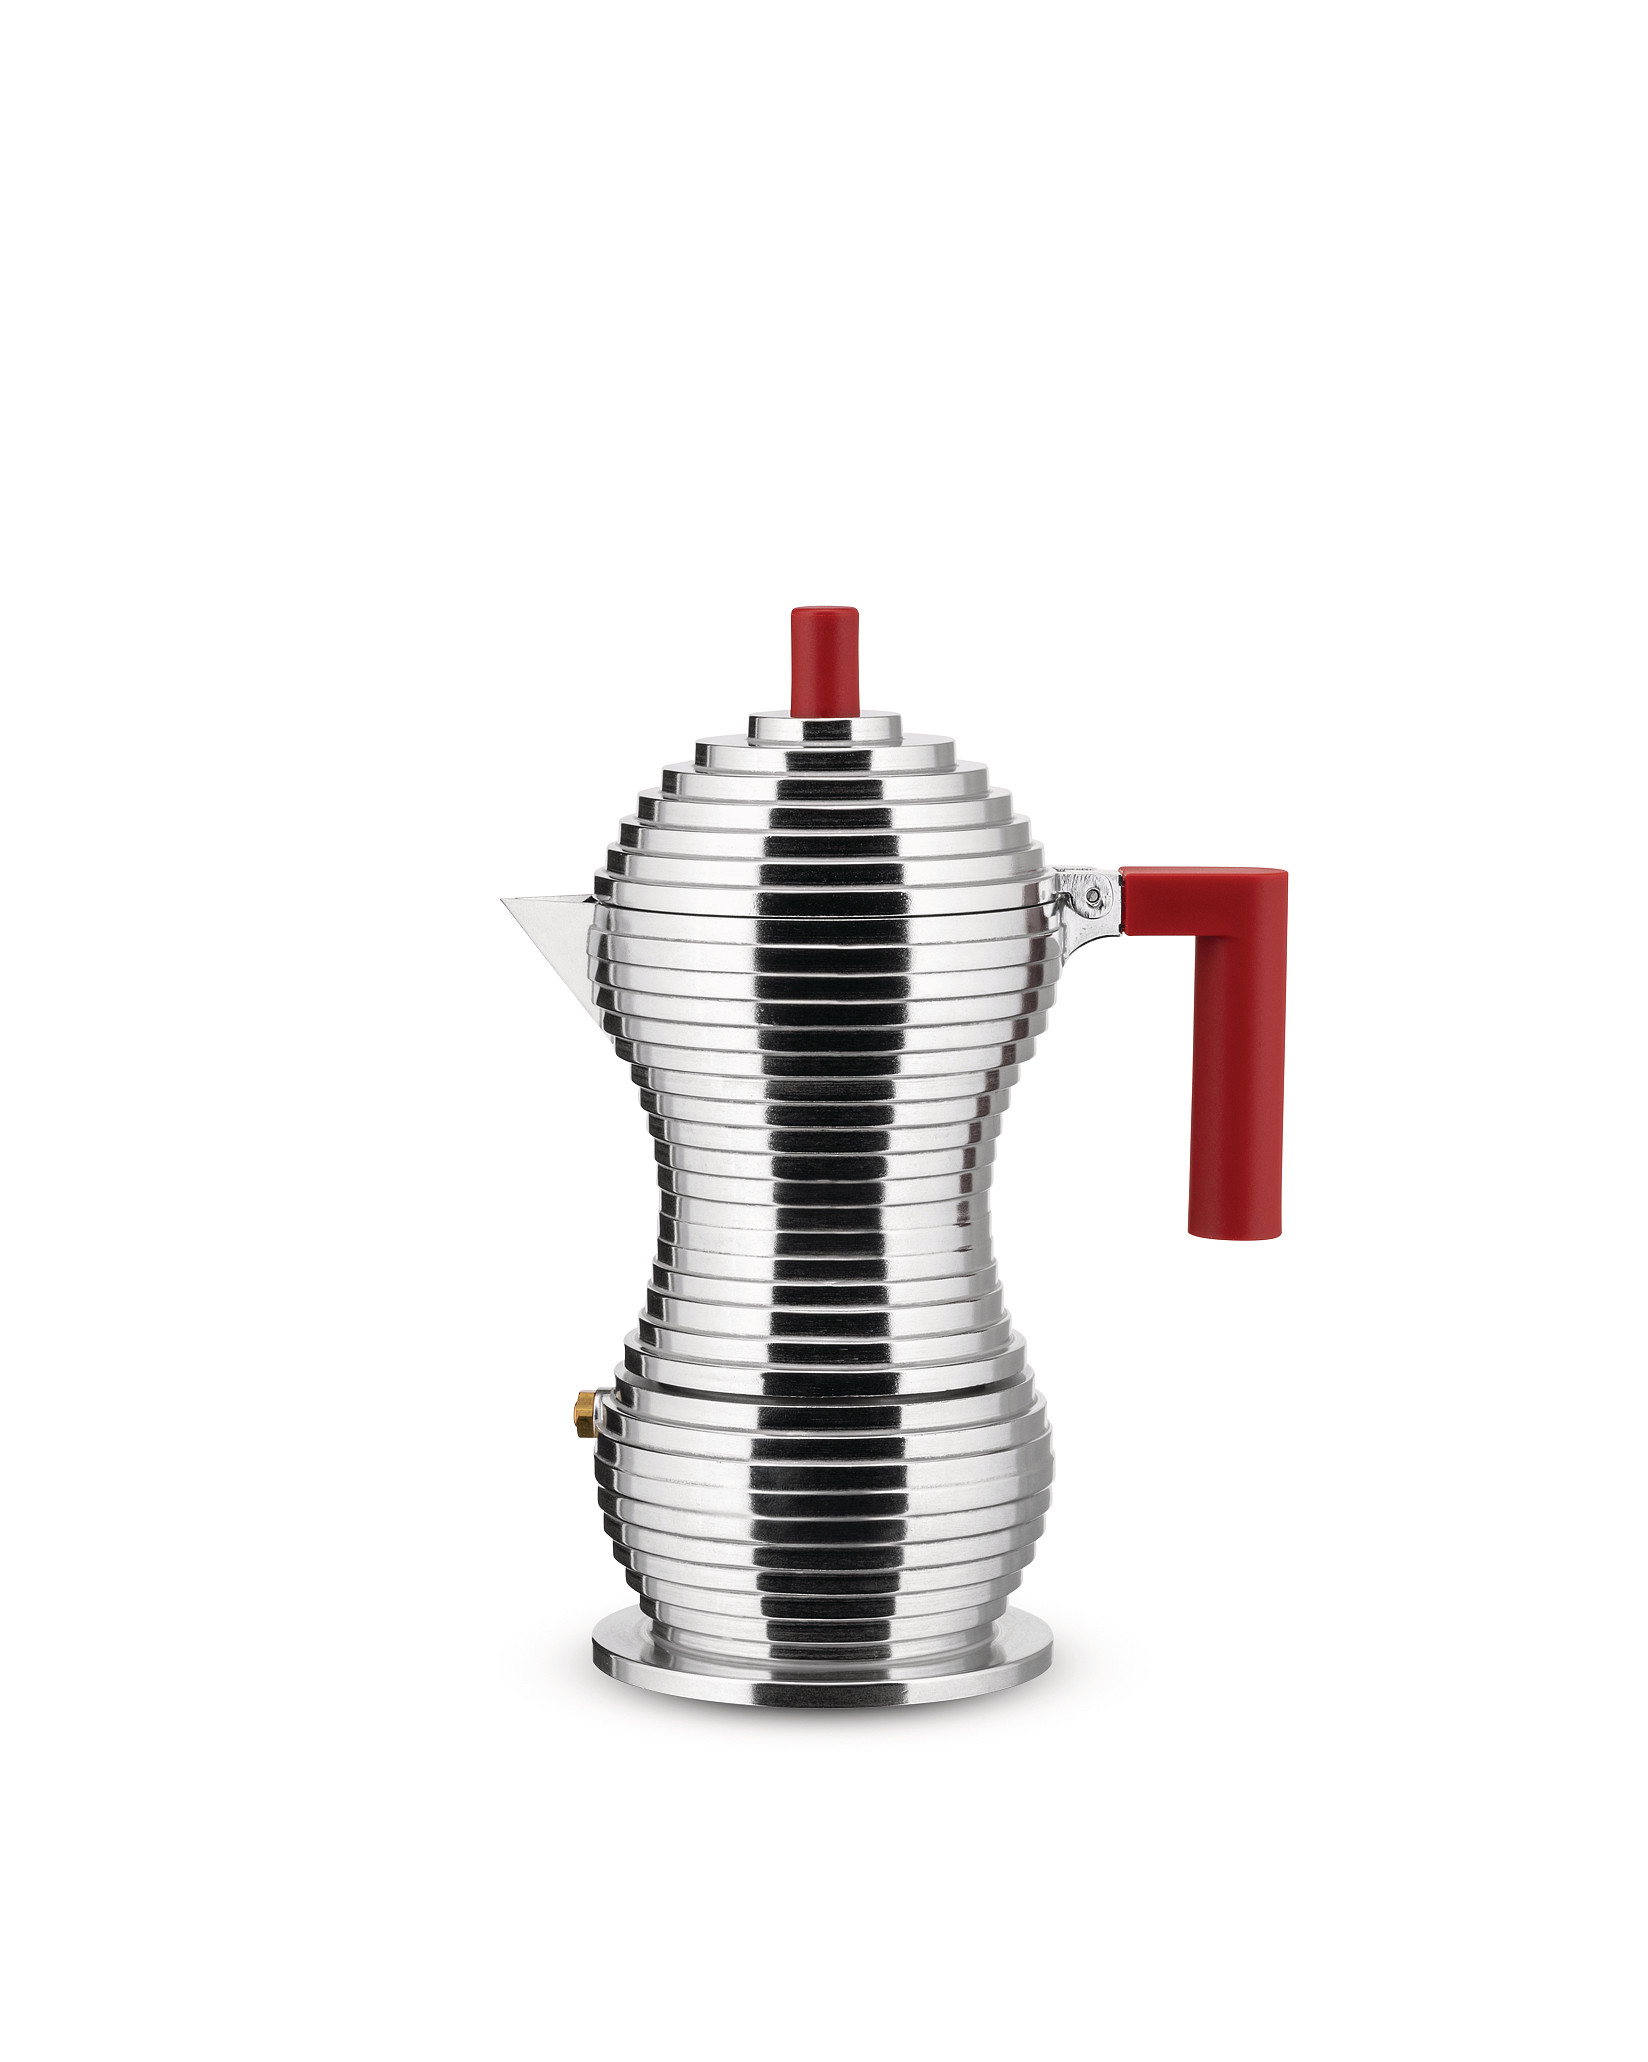 Espresso kávovar Pulcina na indukci, 150ml, červený - Alessi